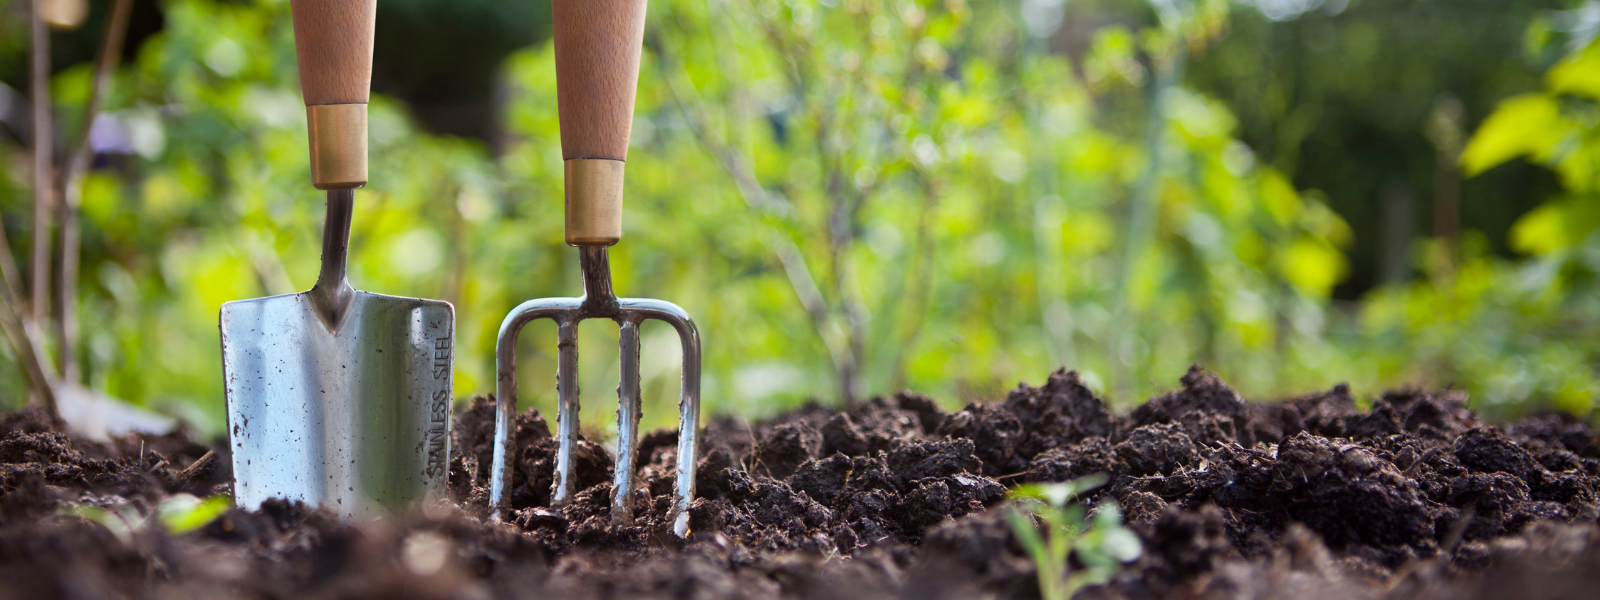 Die 10 besten Tipps zur nachhaltigen Gartenpflege